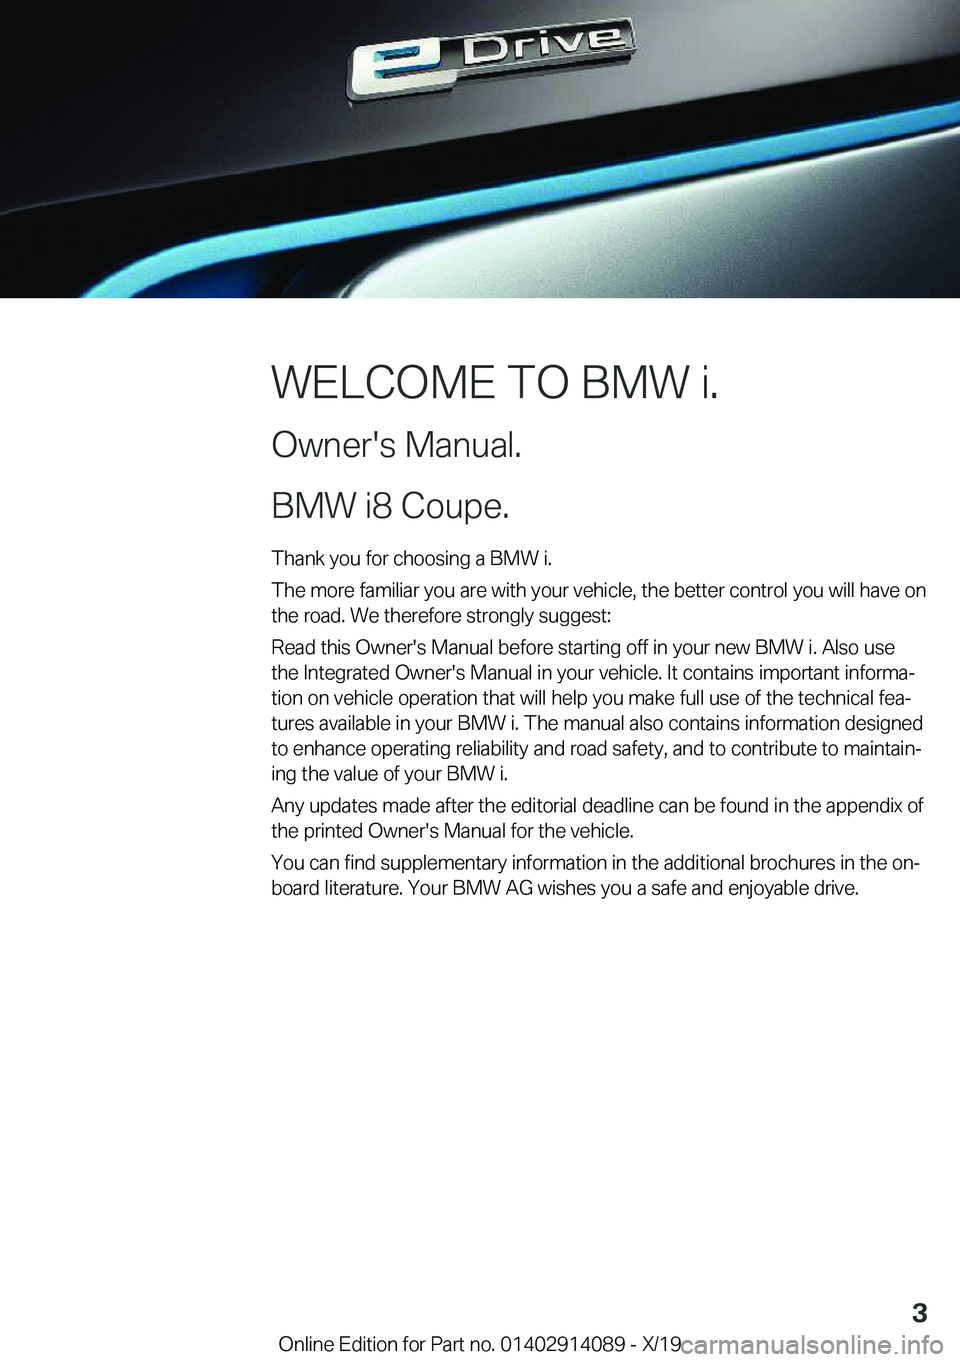 BMW I8 2020  Owners Manual �W�E�L�C�O�M�E��T�O��B�M�W��i�.
�O�w�n�e�r�'�s��M�a�n�u�a�l�.
�B�M�W��i�8��C�o�u�p�e�. �T�h�a�n�k��y�o�u��f�o�r��c�h�o�o�s�i�n�g��a��B�M�W��i�.
�T�h�e��m�o�r�e��f�a�m�i�l�i�a�r��y�o